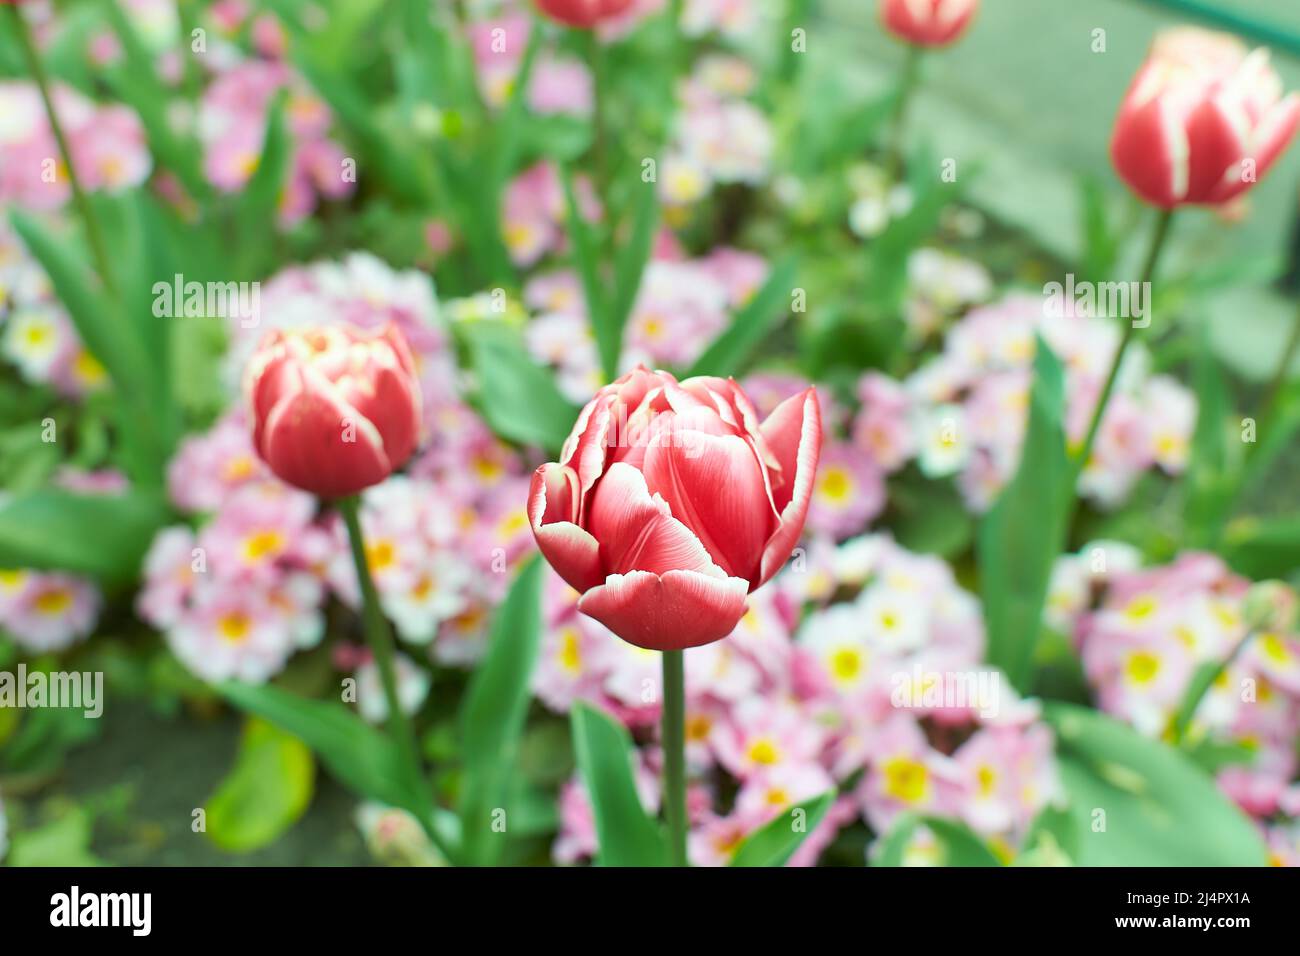 Des tulipes roses vives, rouges avec des feuilles vertes fleurissent dans un jardin en un jour de printemps, un magnifique fond floral extérieur photographié avec une mise au point douce. Banque D'Images